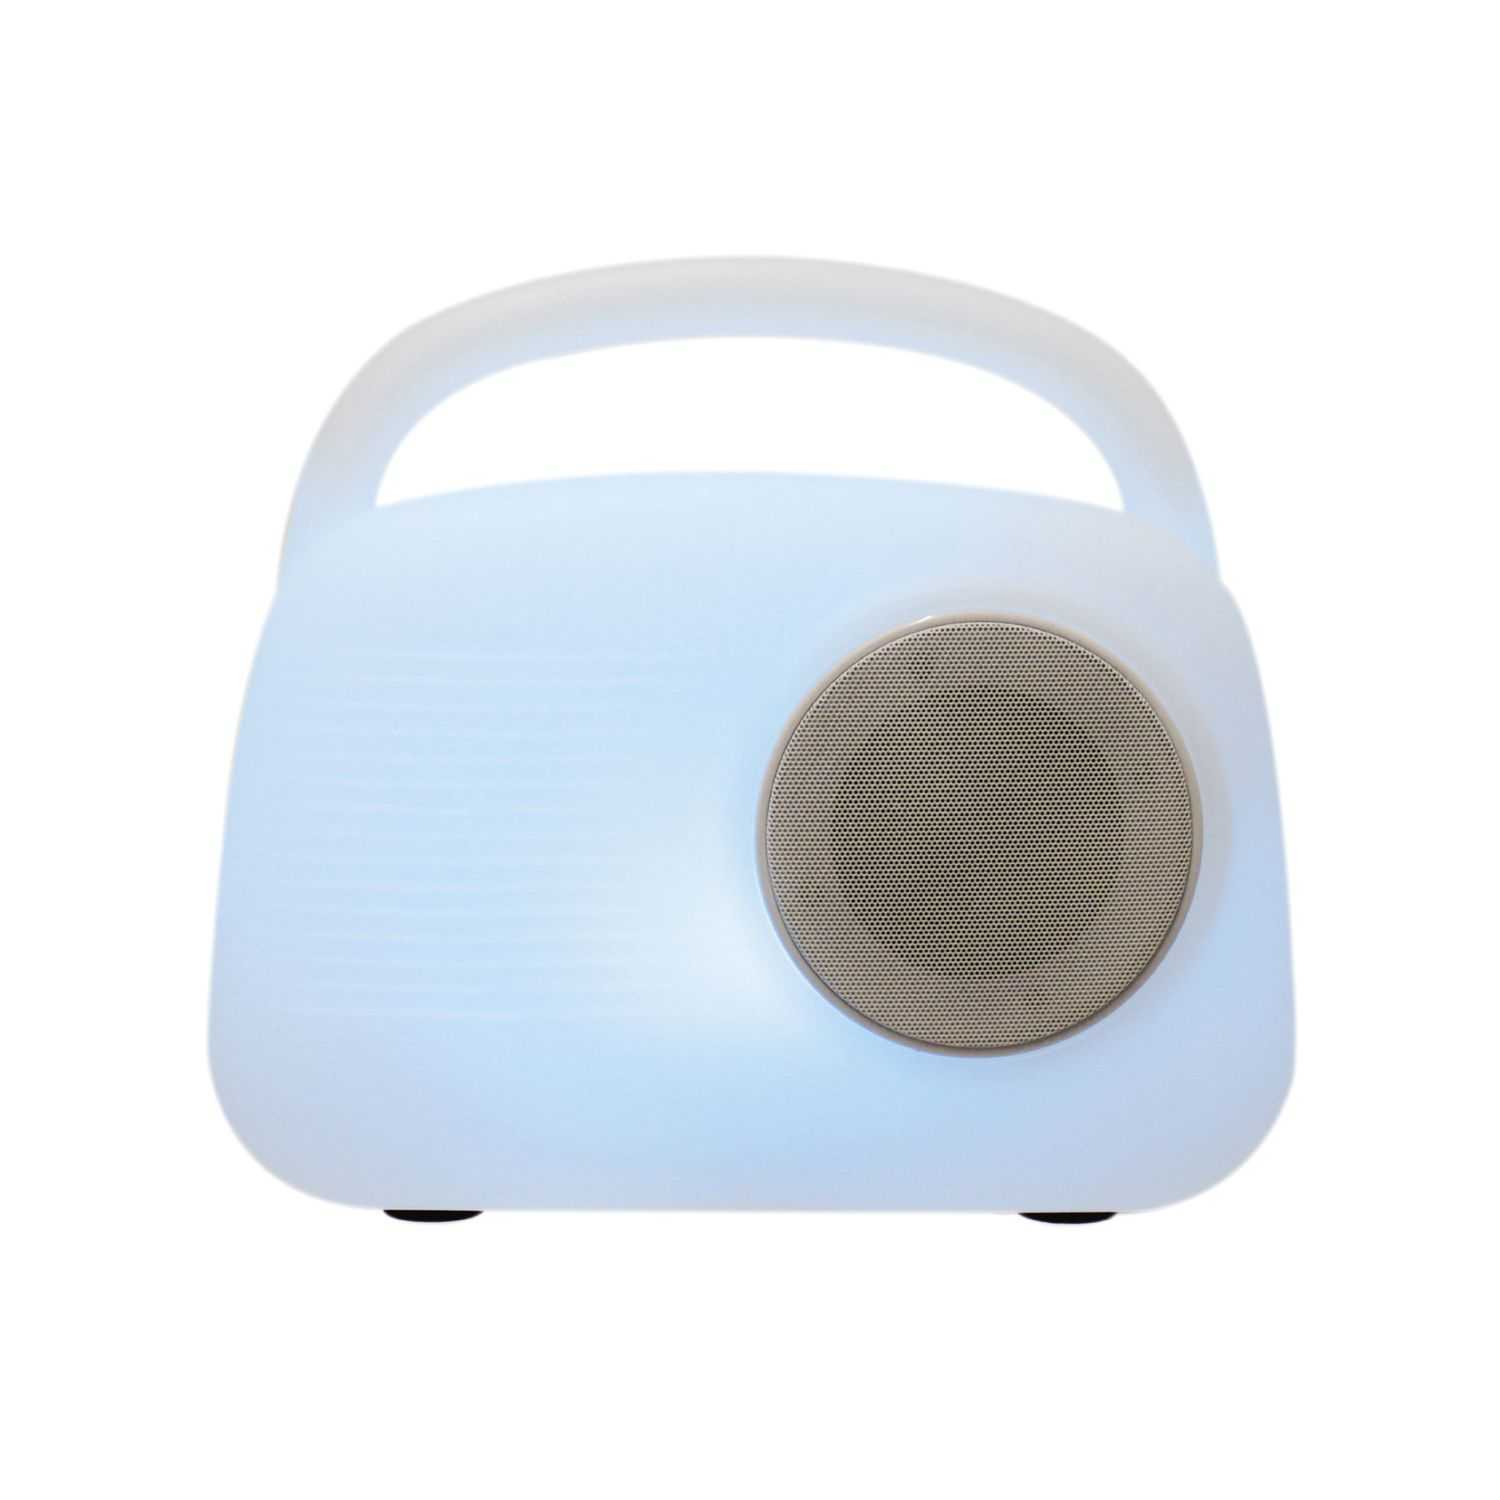 Draadloze bluetooth luidspreker met multicolor verlichting en afstandsbediening